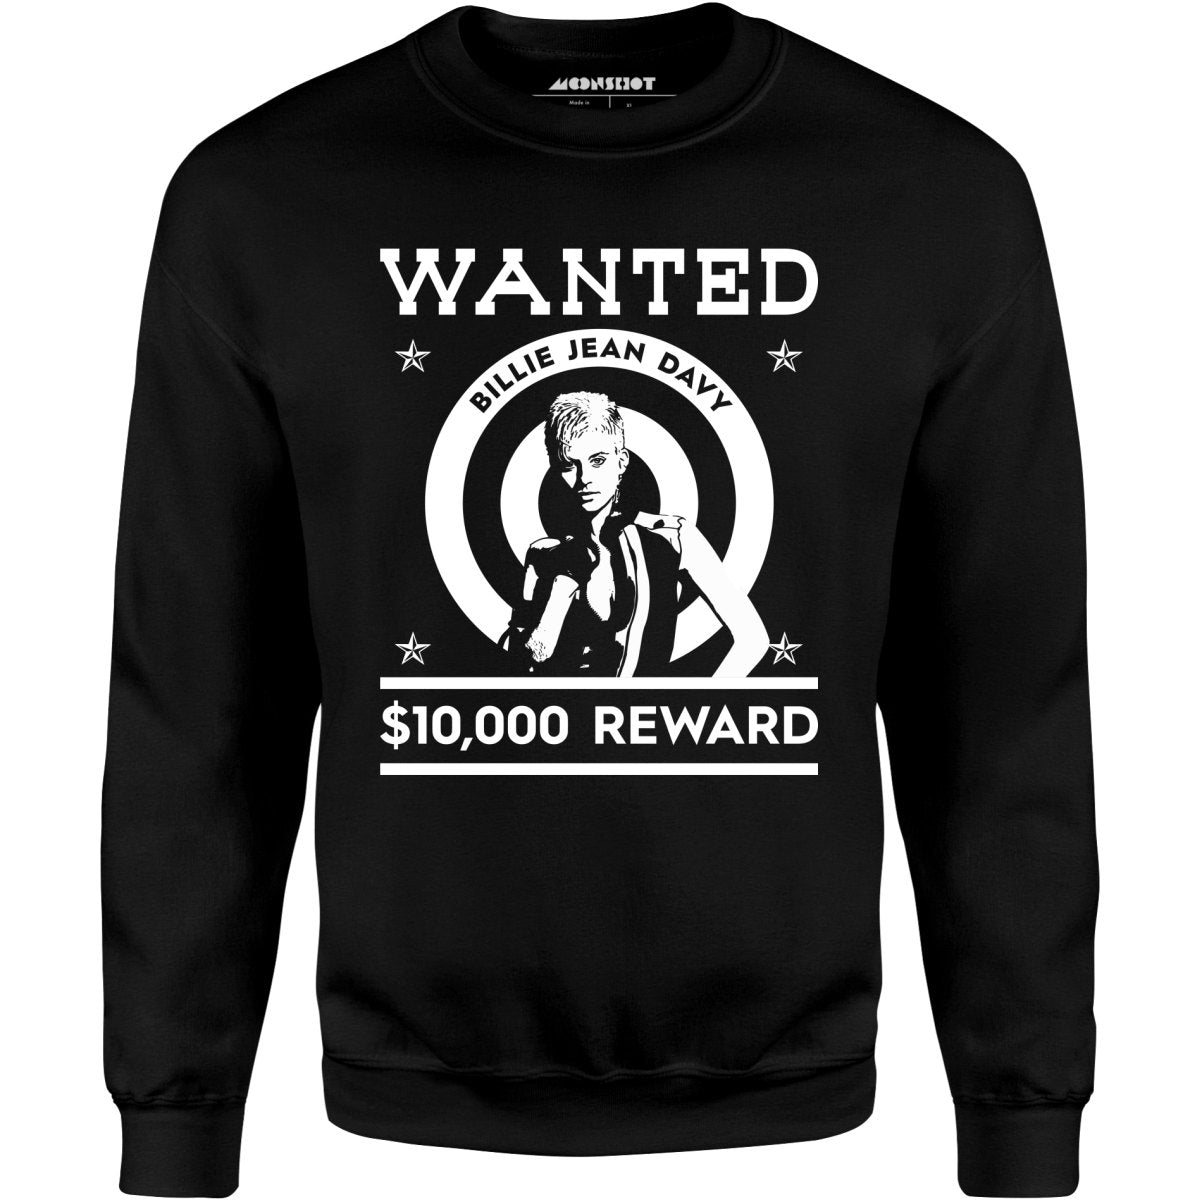 Wanted - Billie Jean Davy - Unisex Sweatshirt